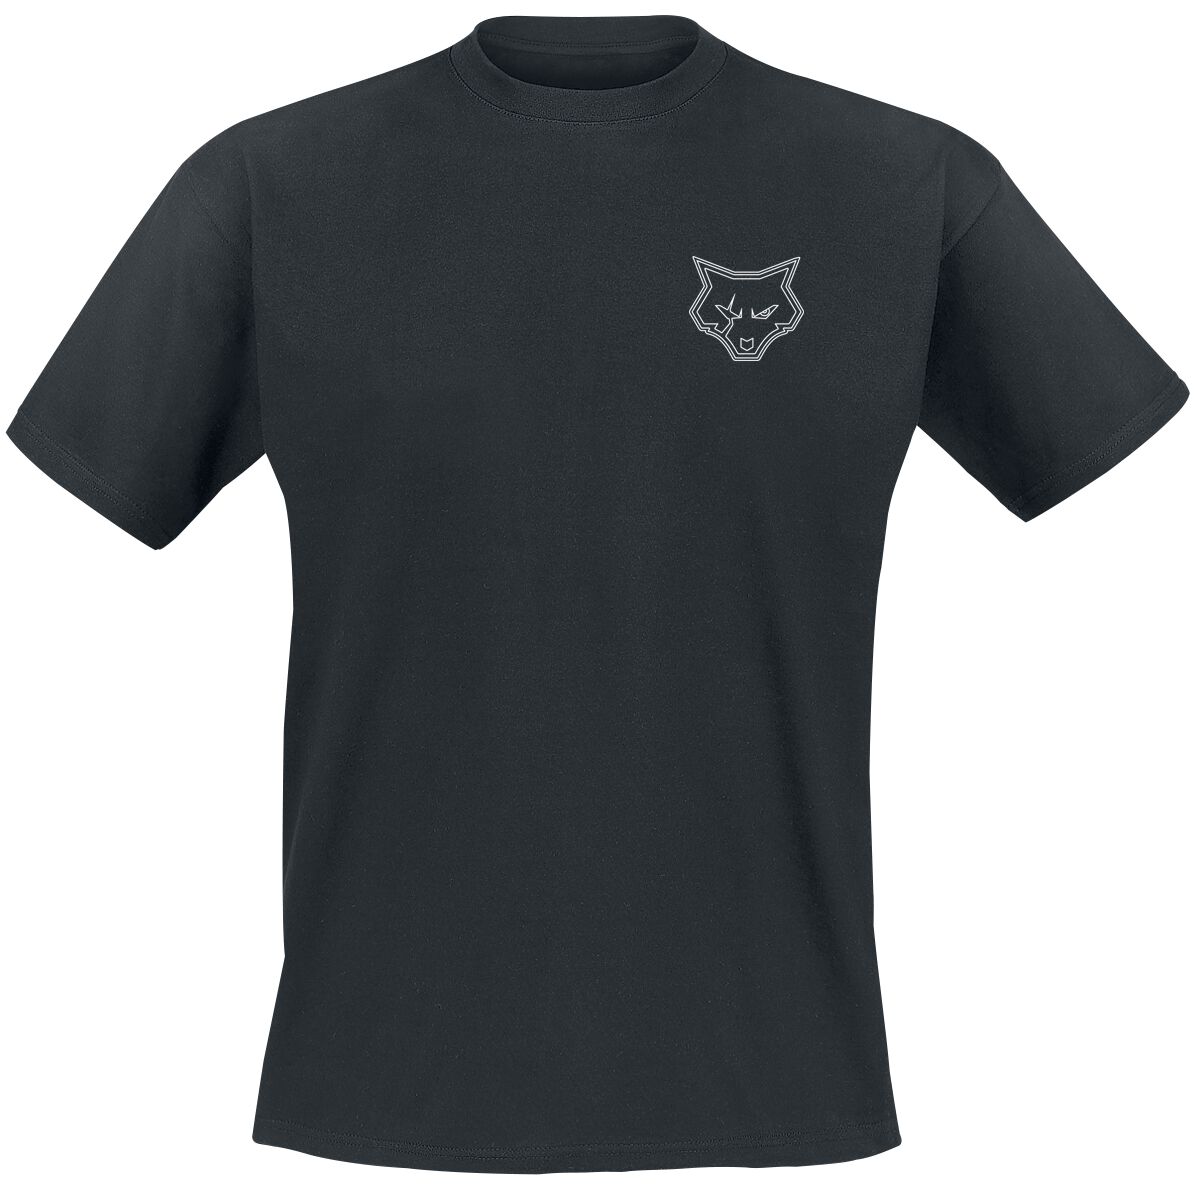 Bad Wolves T-Shirt - Bad F*cking Wolves - S bis 4XL - für Männer - Größe S - schwarz  - Lizenziertes Merchandise!